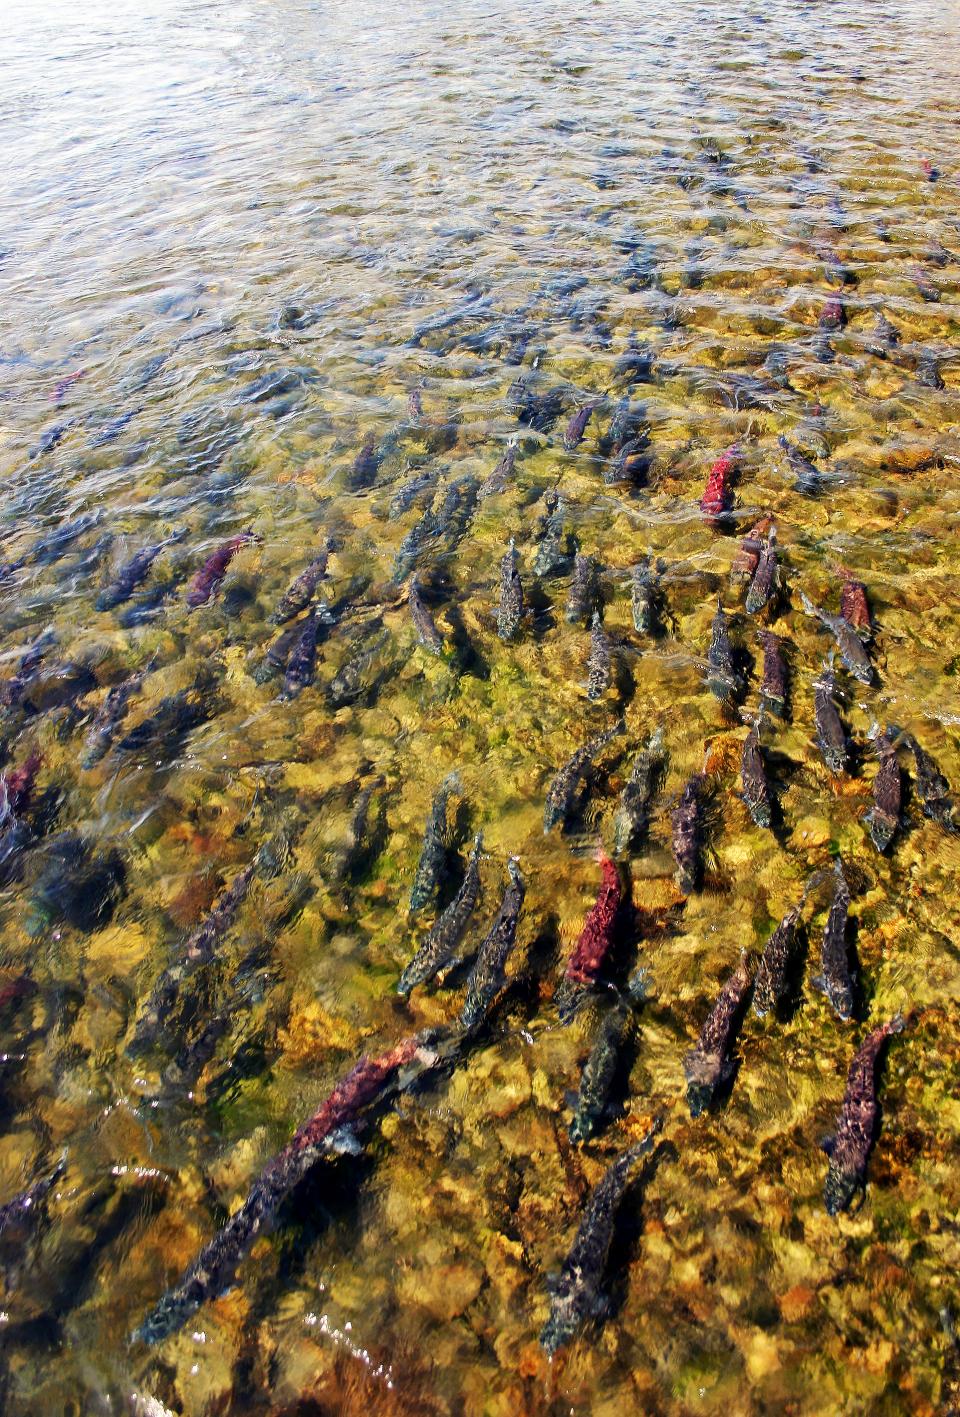 Stillehavslaksen kan opptre i enorme mengder under gytevandringen. Alle dør etter gyting og nedbryting av fisken gir viktige næringsstoffer til elvene.